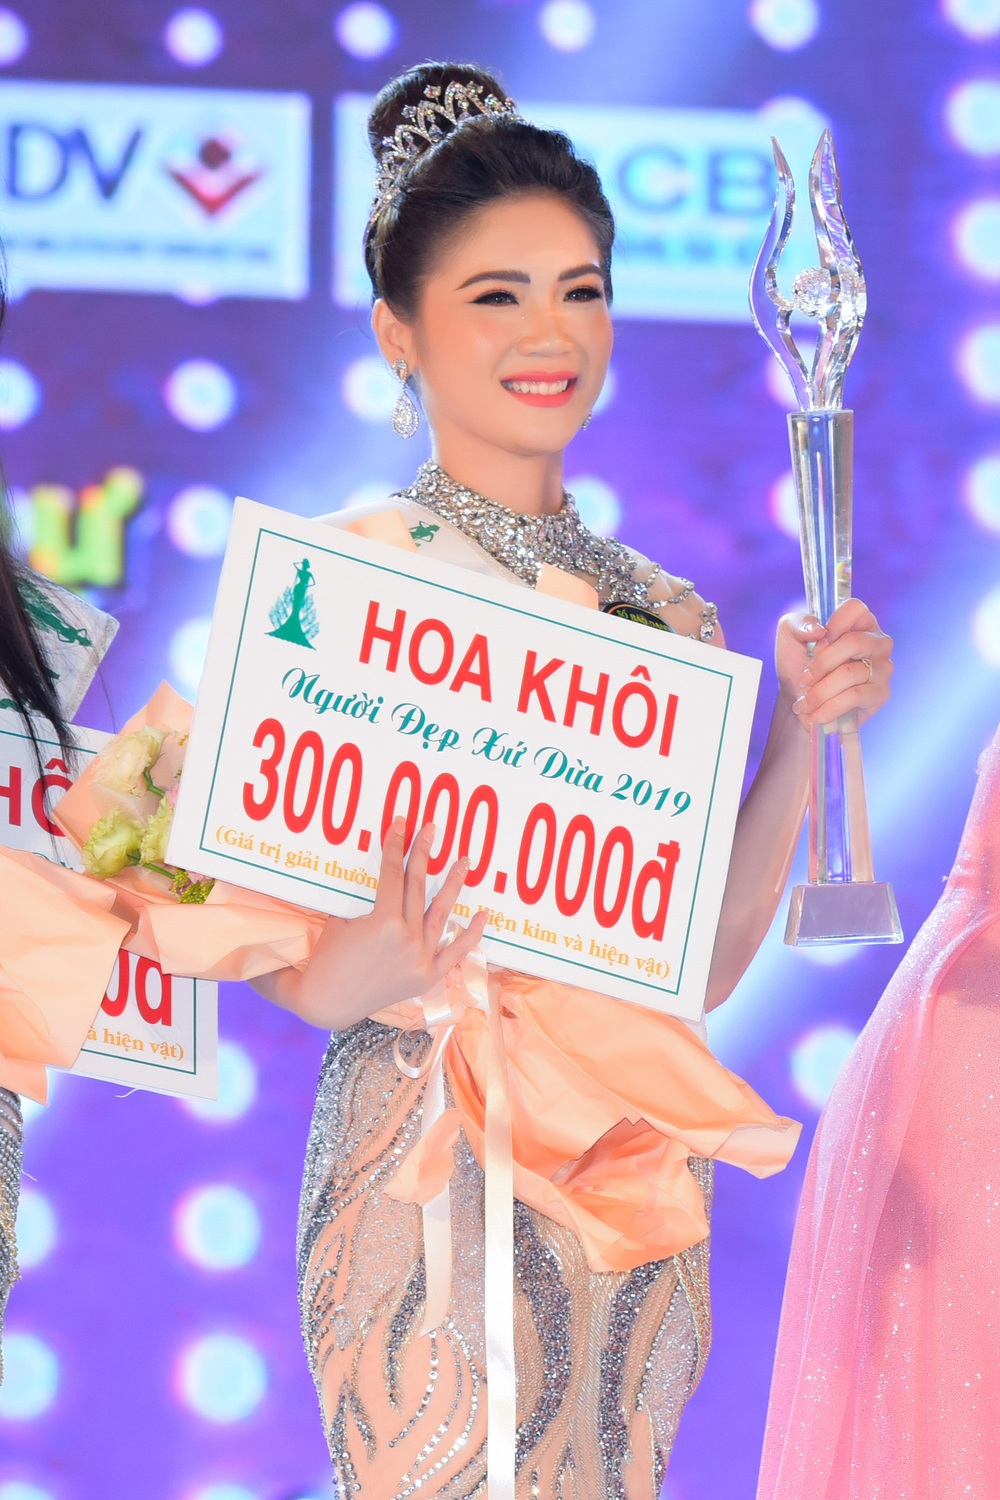 Bùi Kim Quyên đăng quang Người đẹp Xứ dừa 2019 - Ảnh 8.